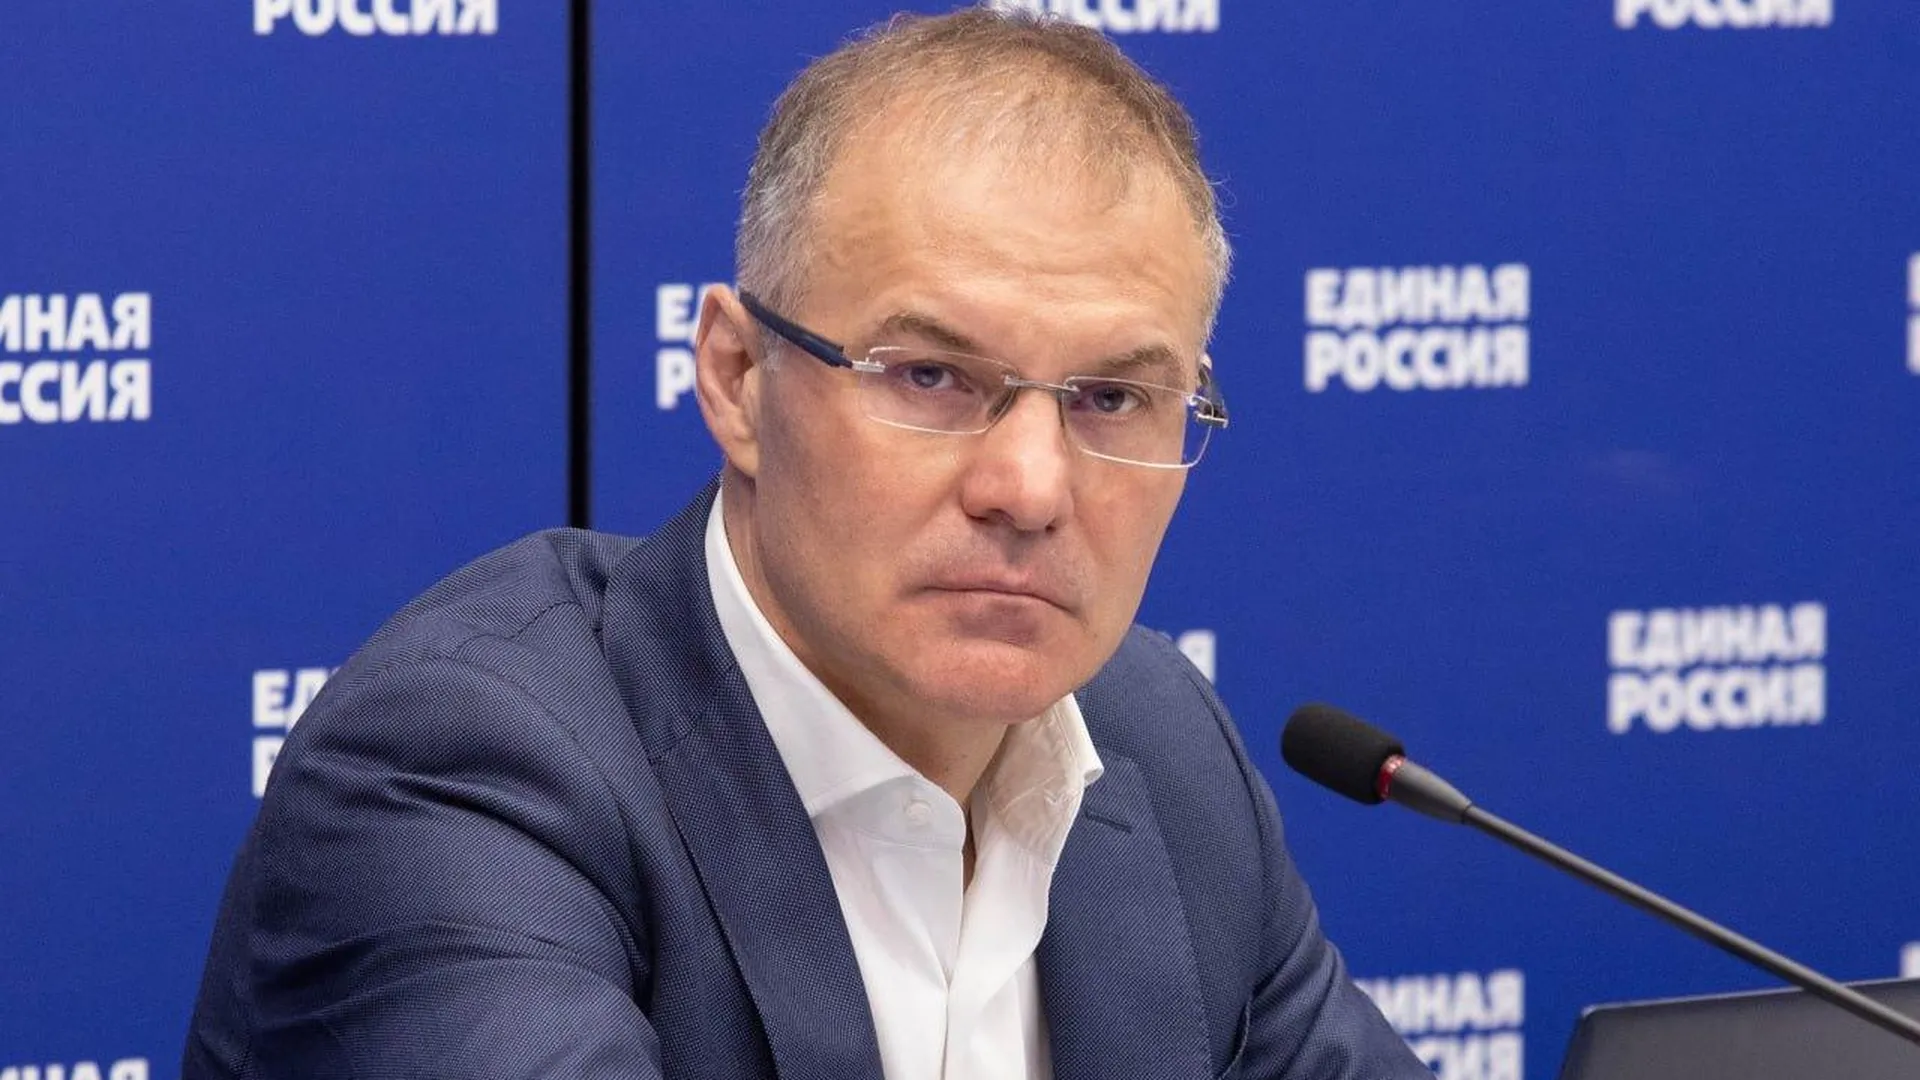 Александр Коган: Выборы в Серпухове проходят штатно, нарушений не зафиксировано